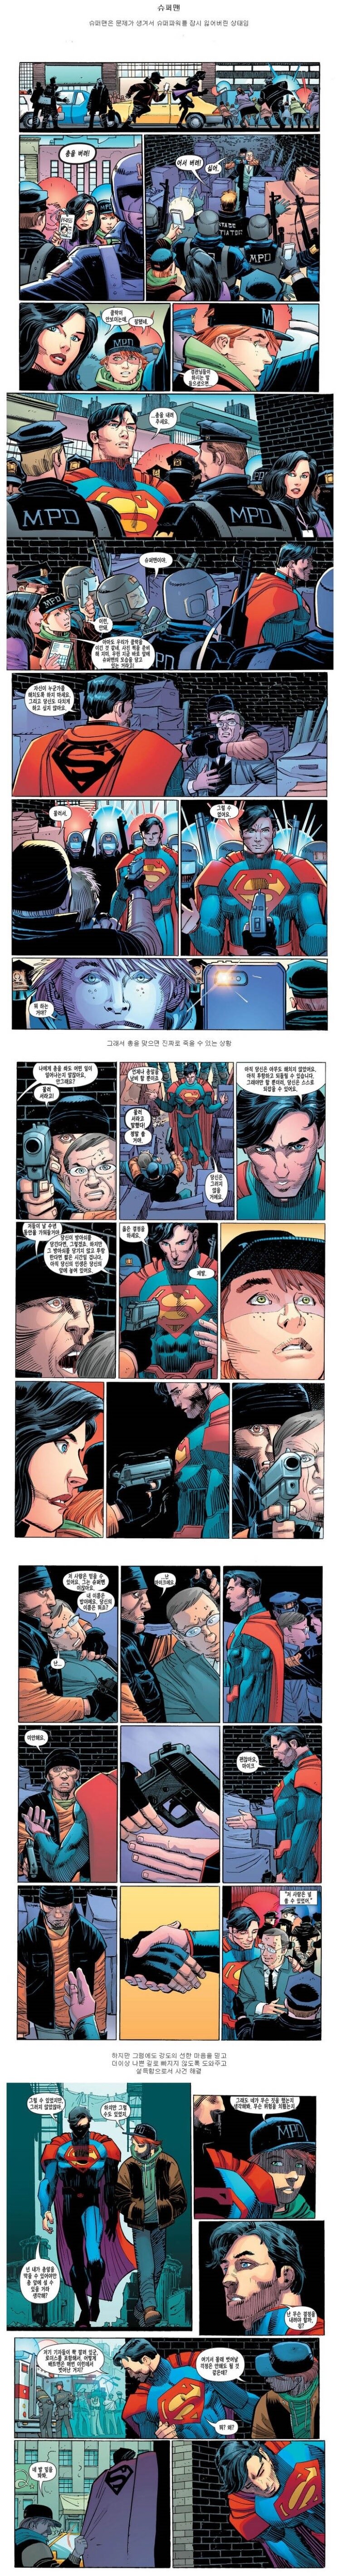 슈퍼맨과 배트맨의 범죄자 대우 차이